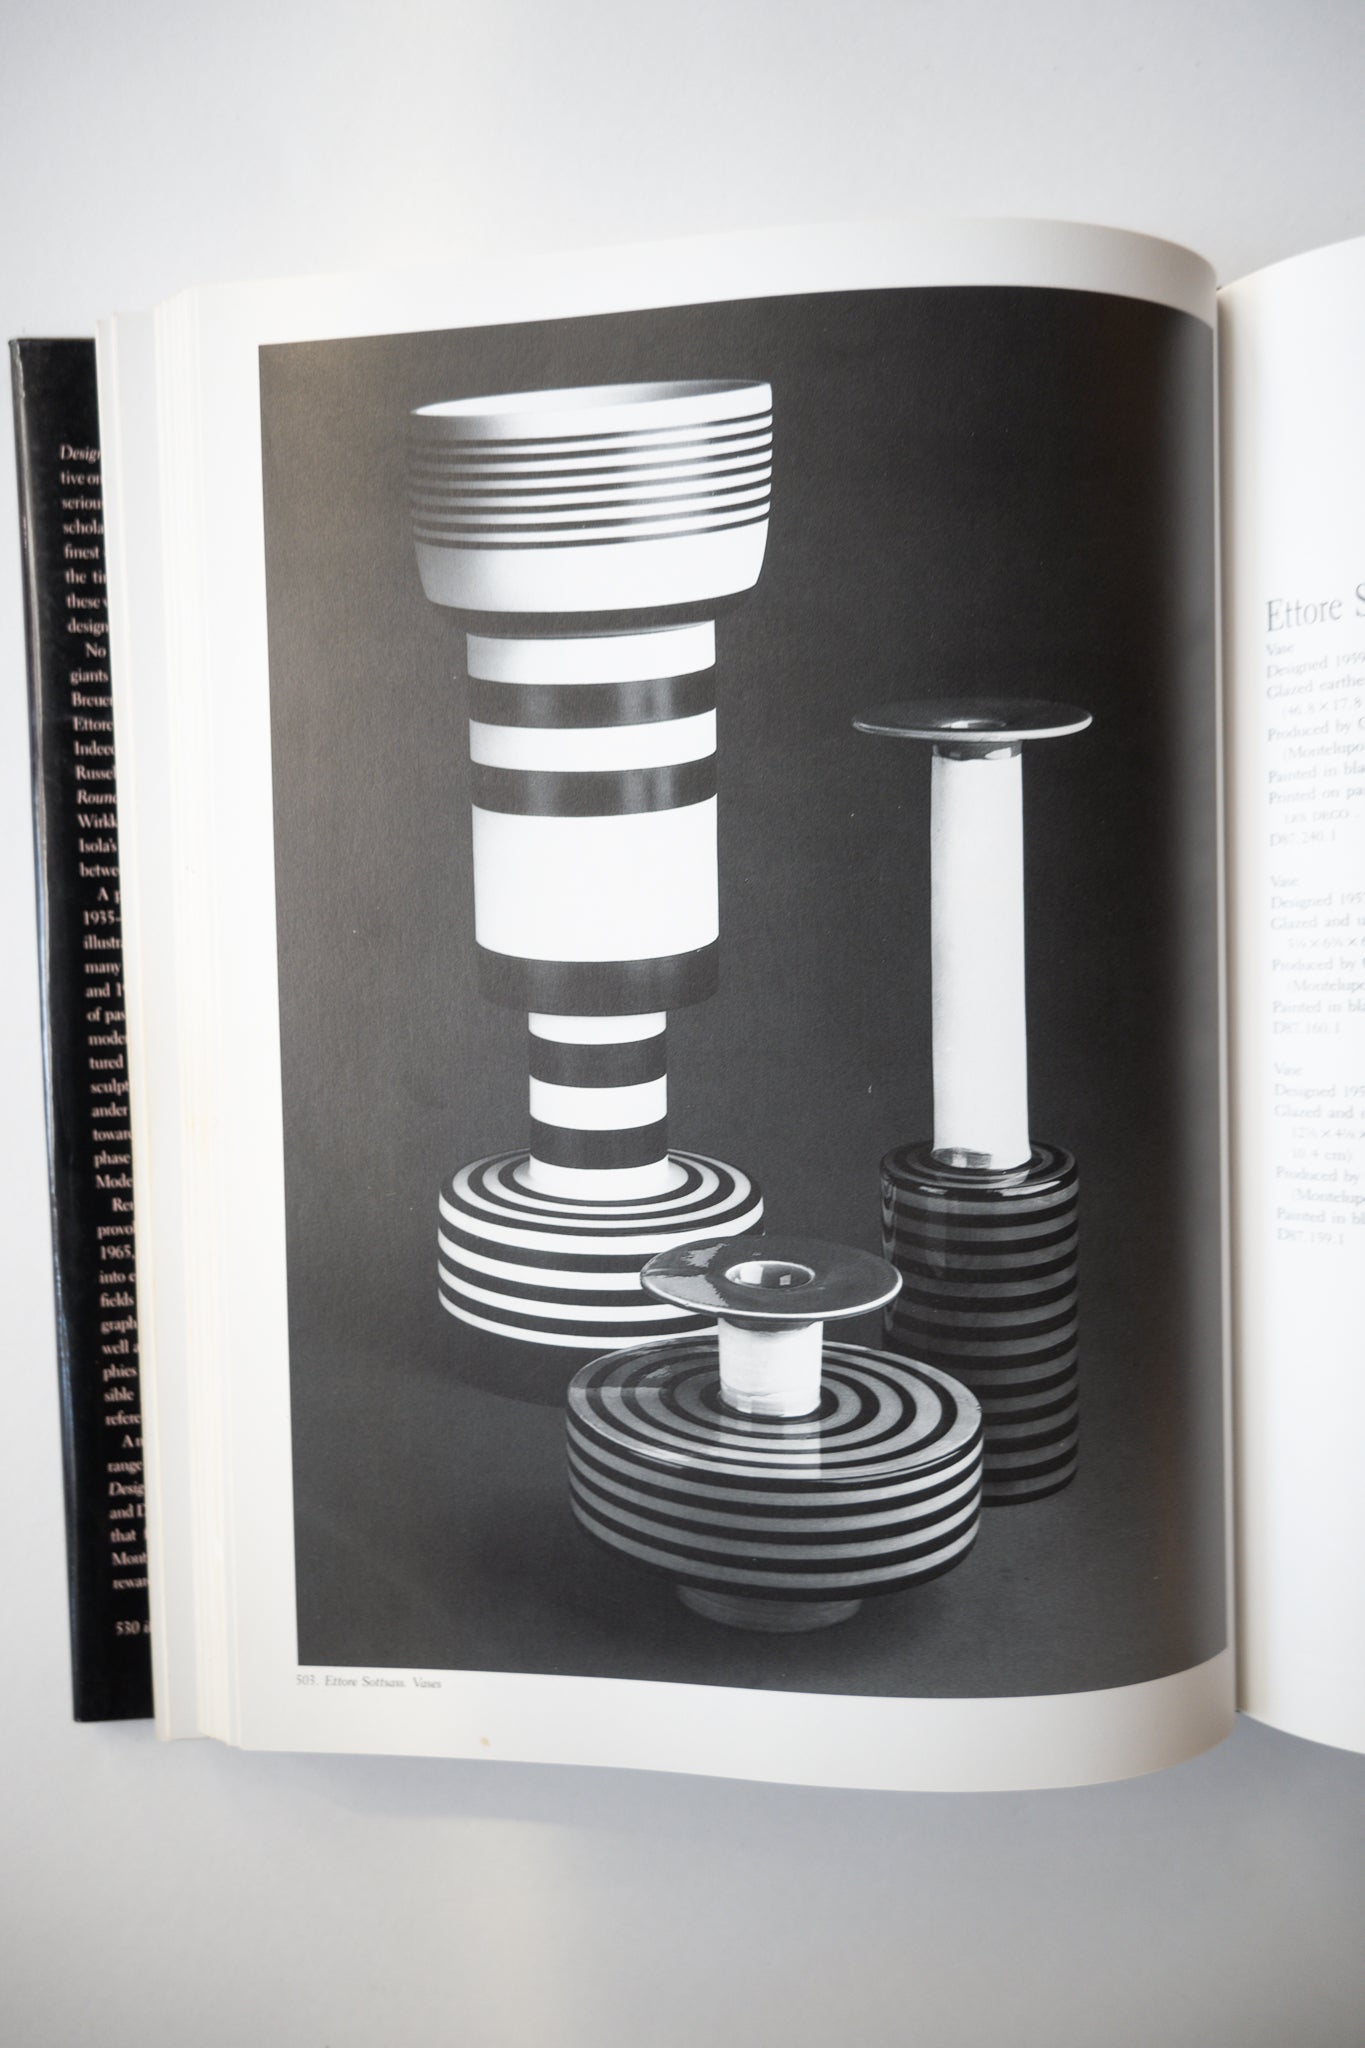 Design 1935-1965: What Modern Was, Eidelberg, 1991